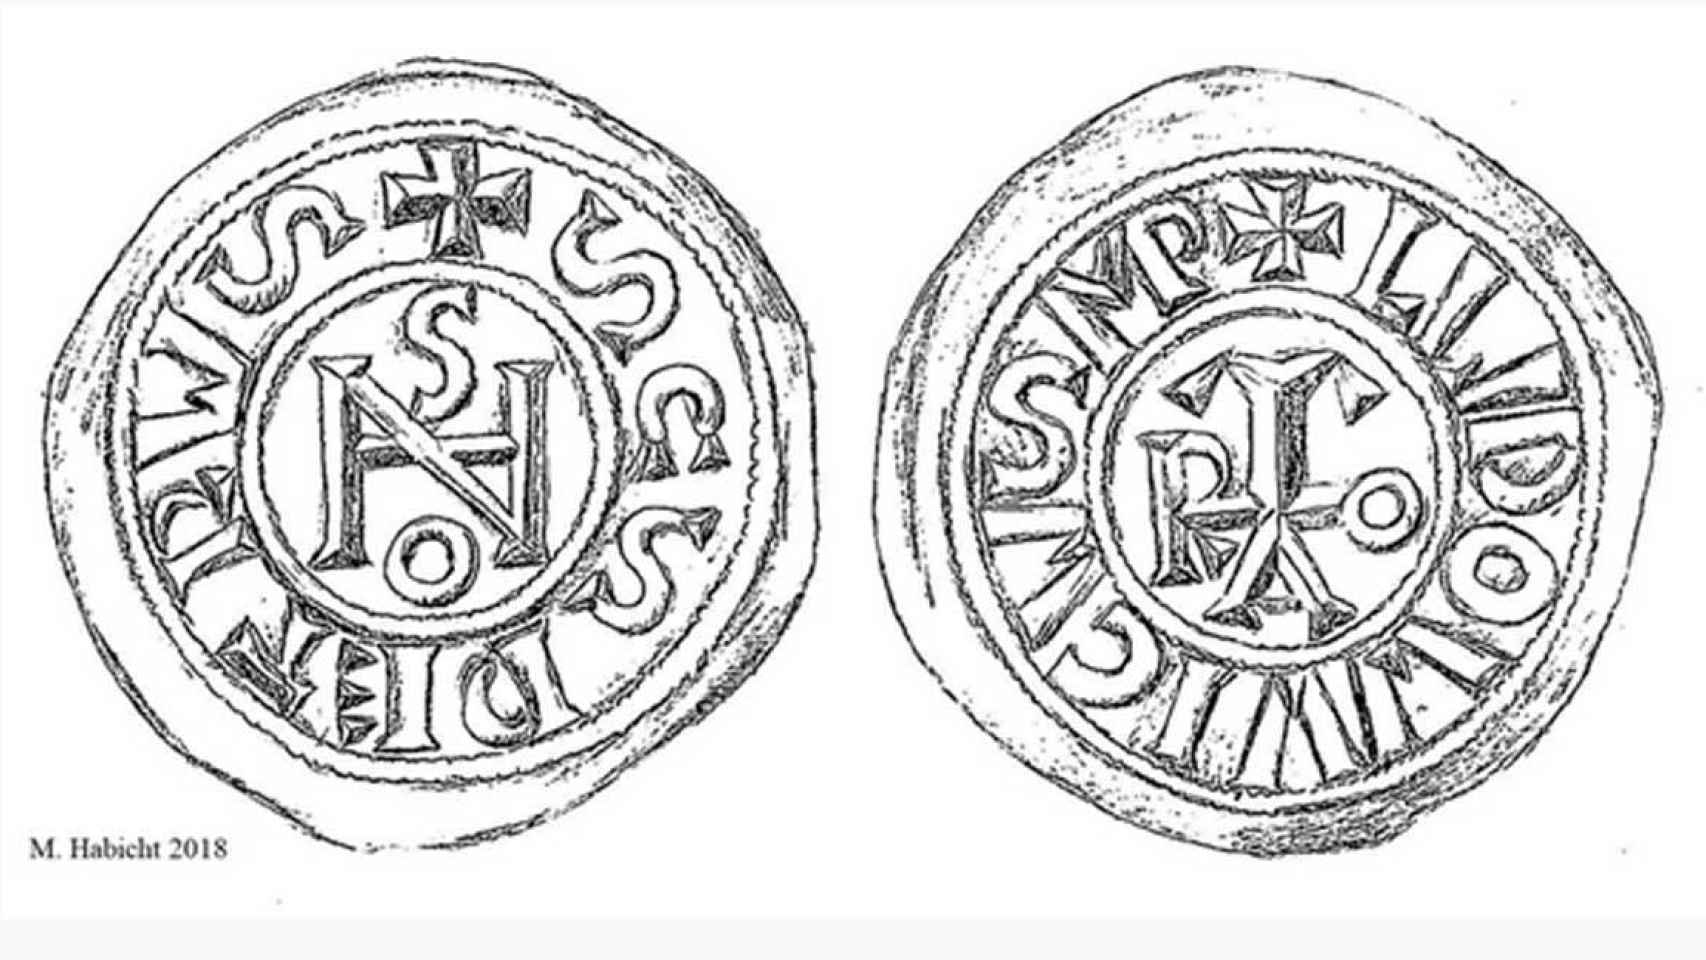 Monedas que muestran el monograma del papa Juan.